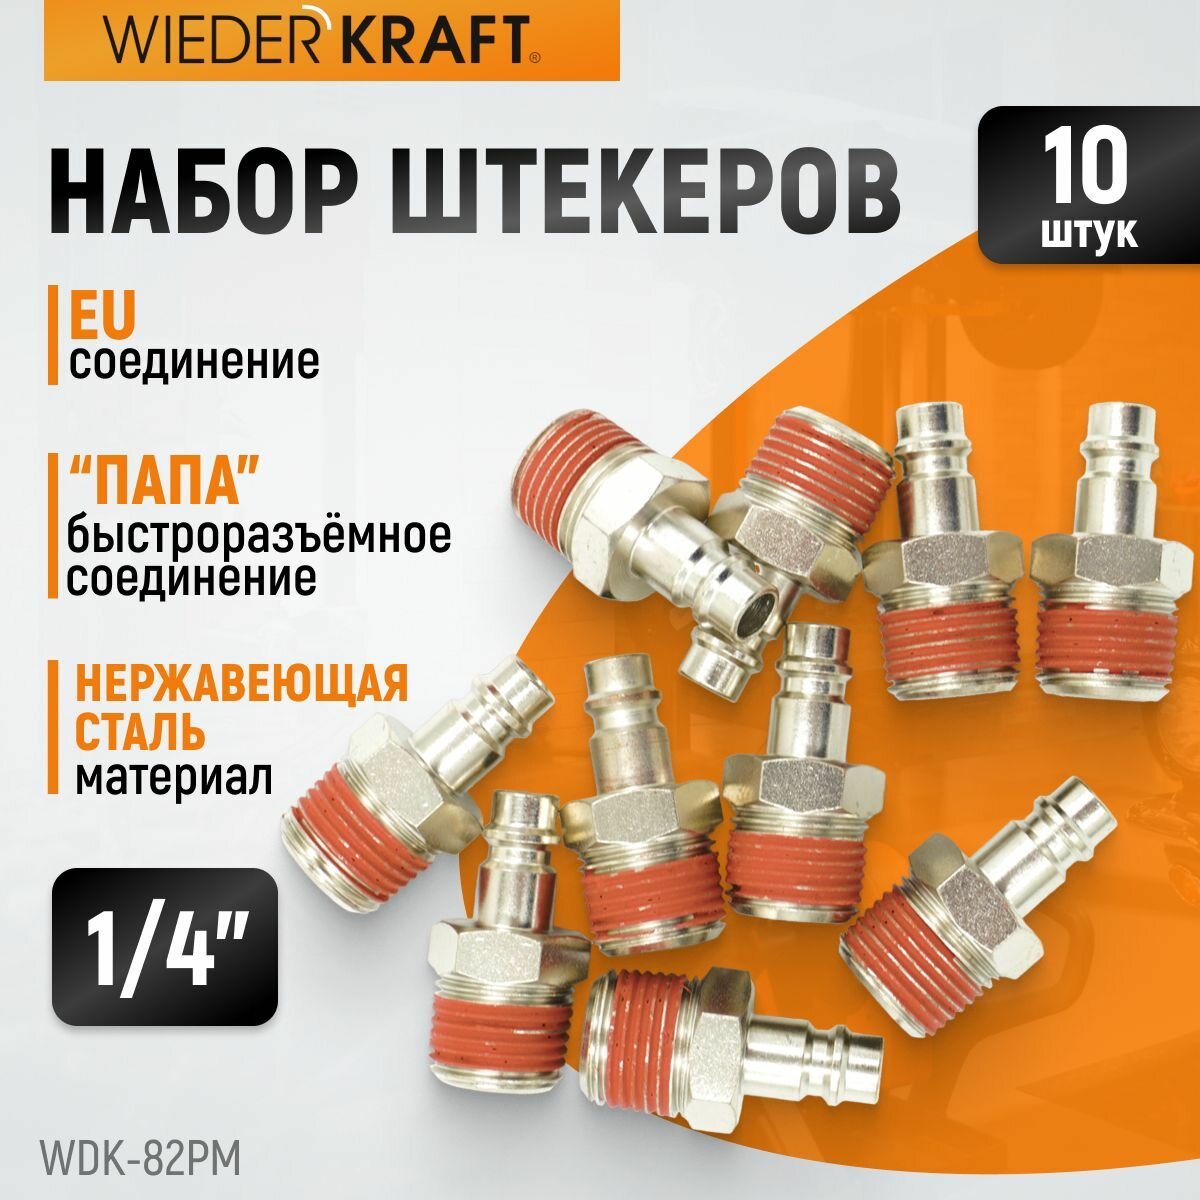 Набор штекеров 10 шт. быстроразъемного EU соединения с наружной резьбой 1/4" WDK-82PM